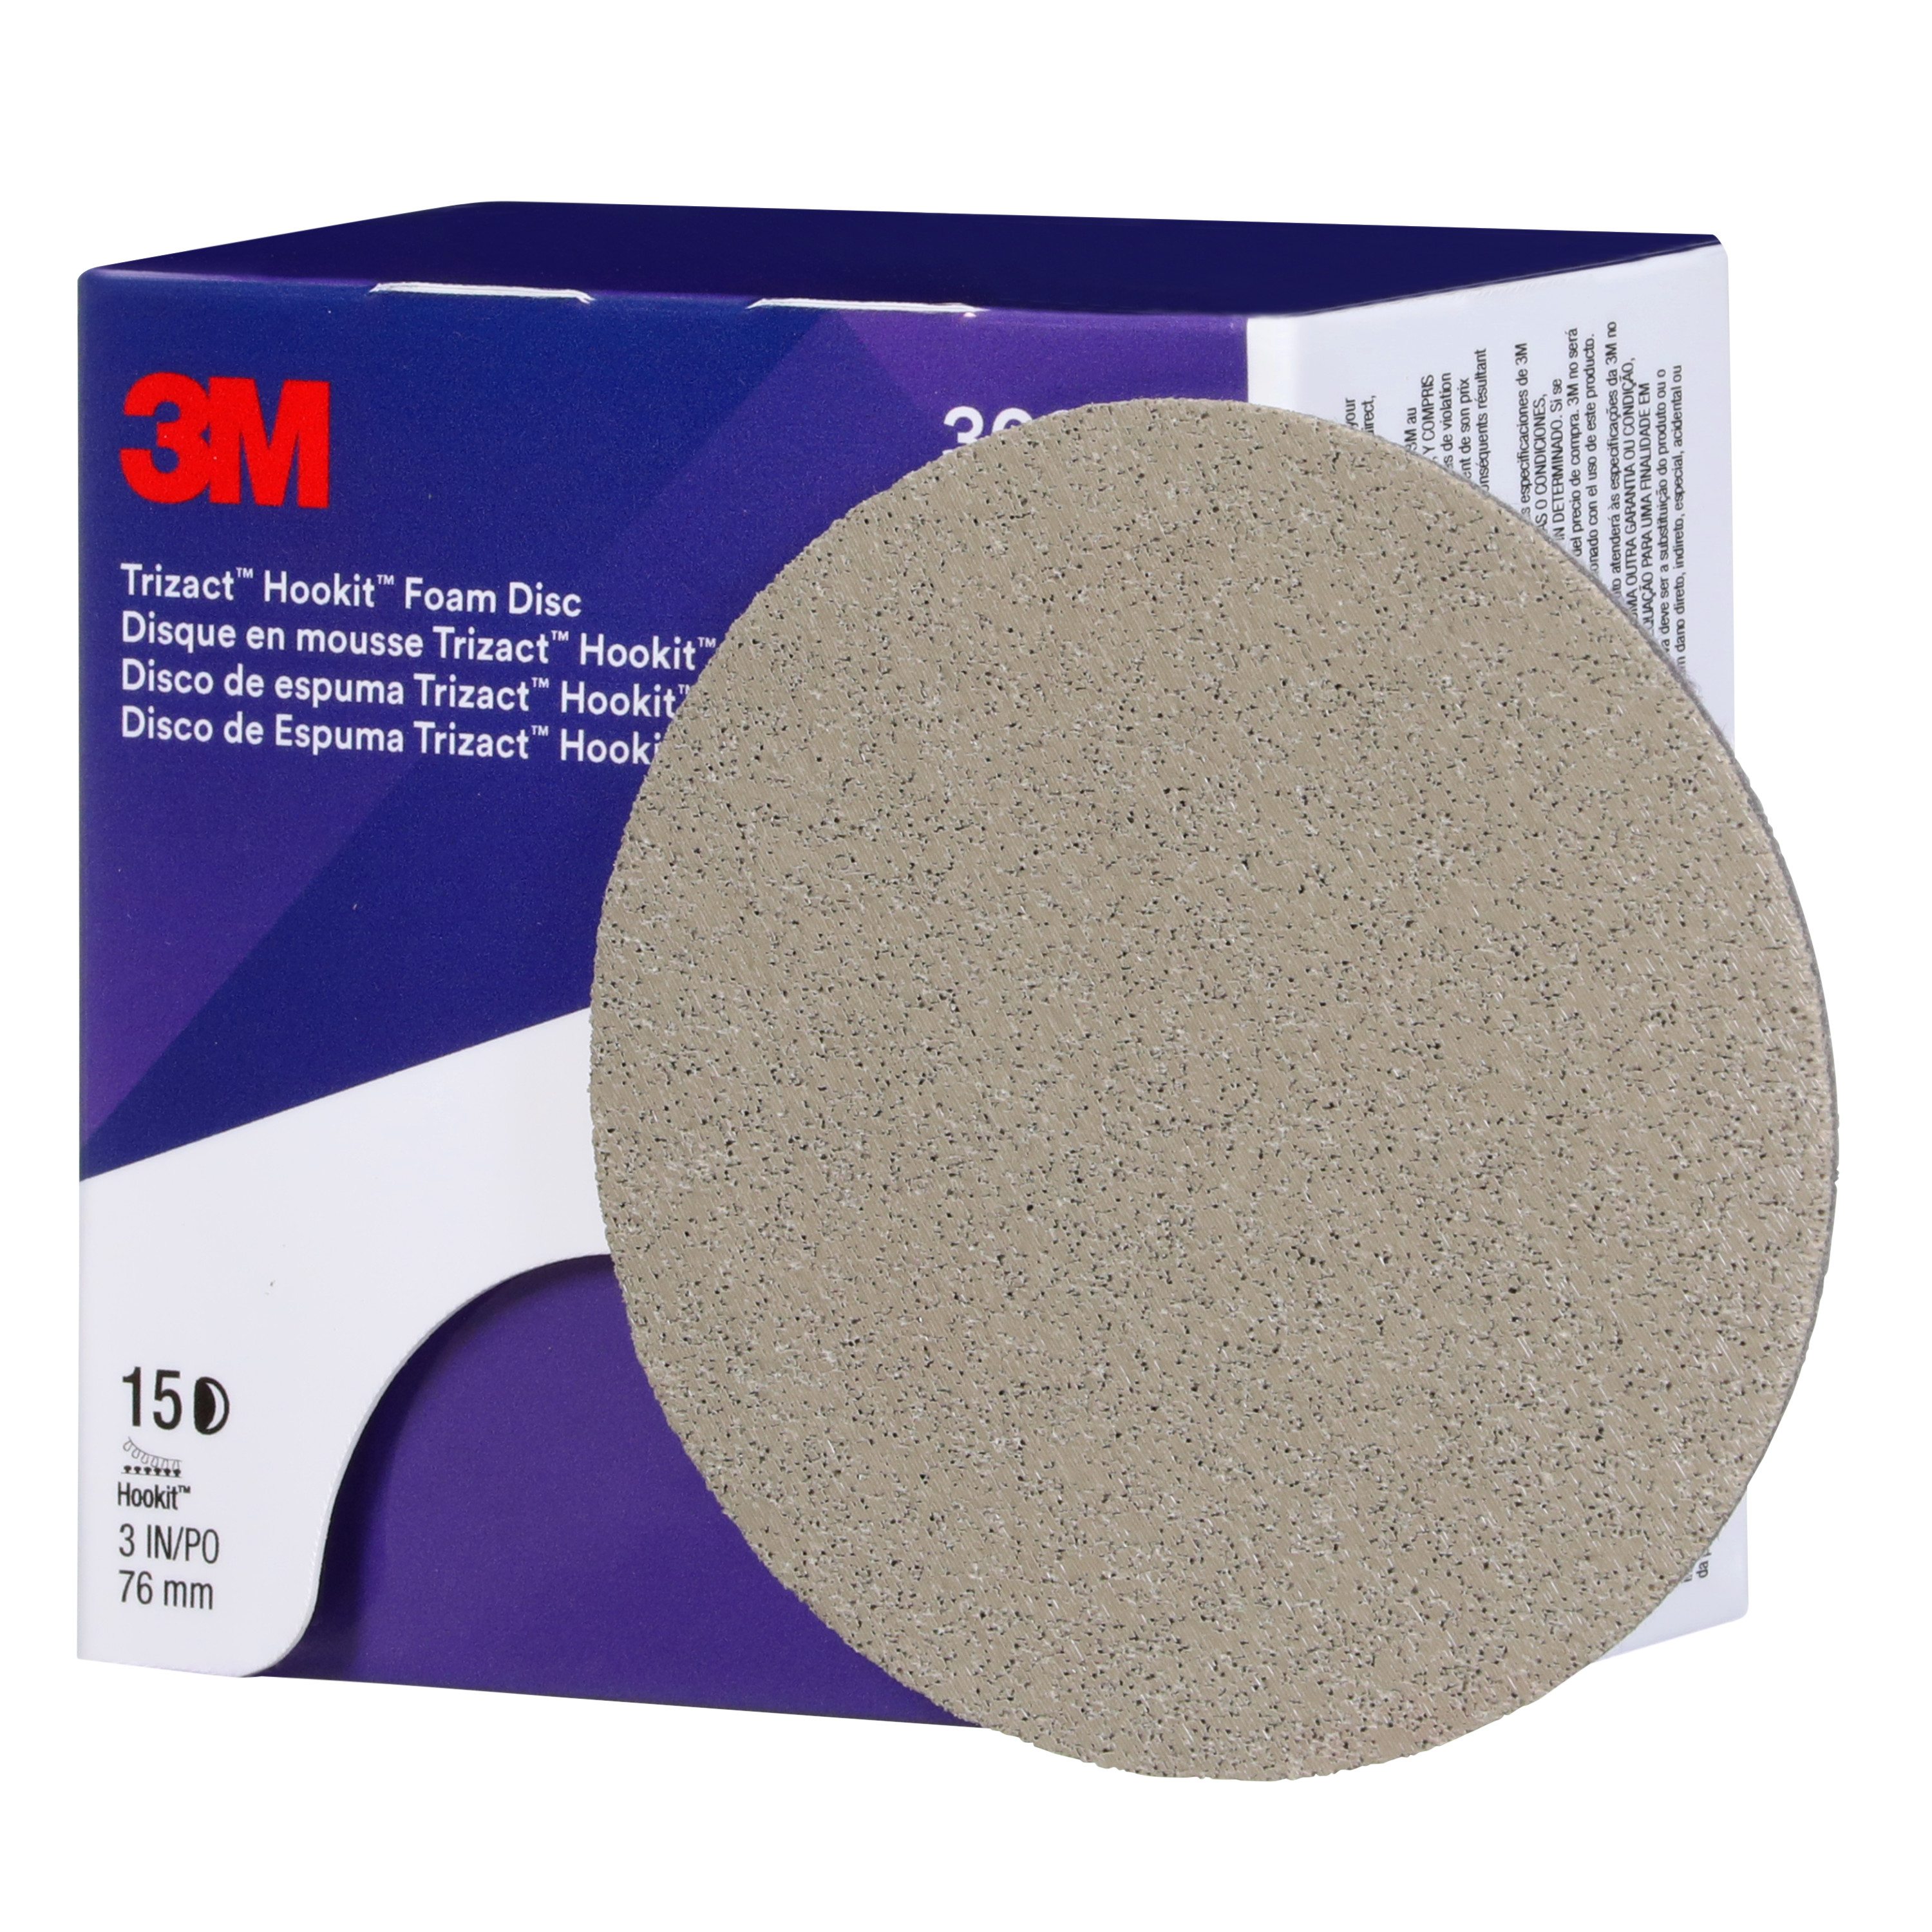 SKU 7100193763 | 3M™ Trizact™ Hookit™ Foam Disc 30804